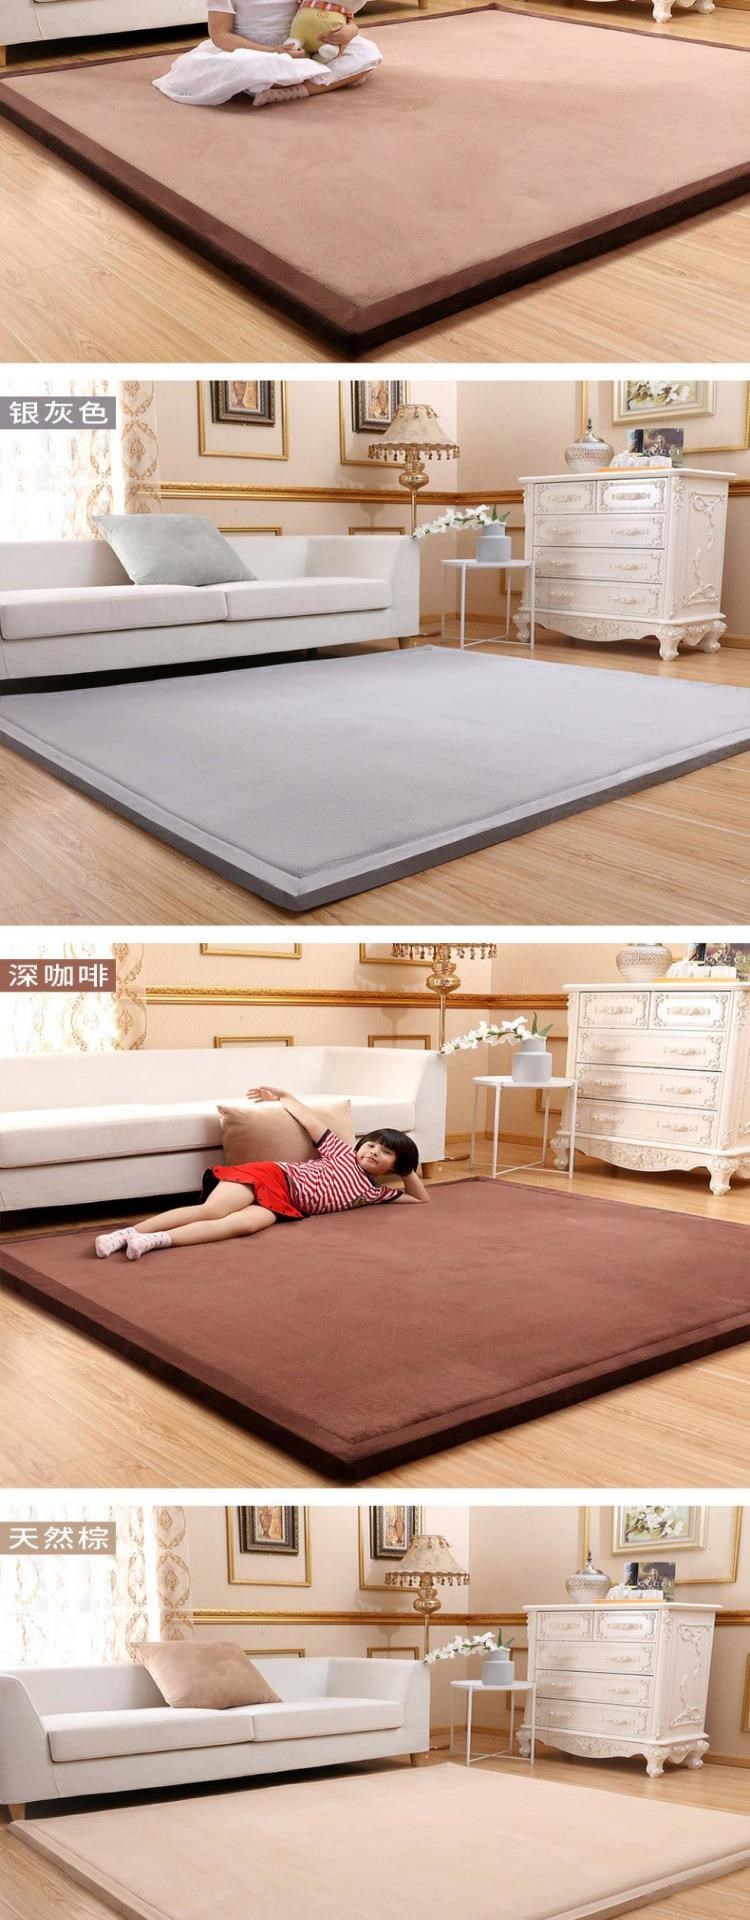 2020 mới tùy chỉnh tatami kang chăn phòng ngủ giường phòng khách thảm trẻ em dễ thương bé bò thảm đi văng - Thảm